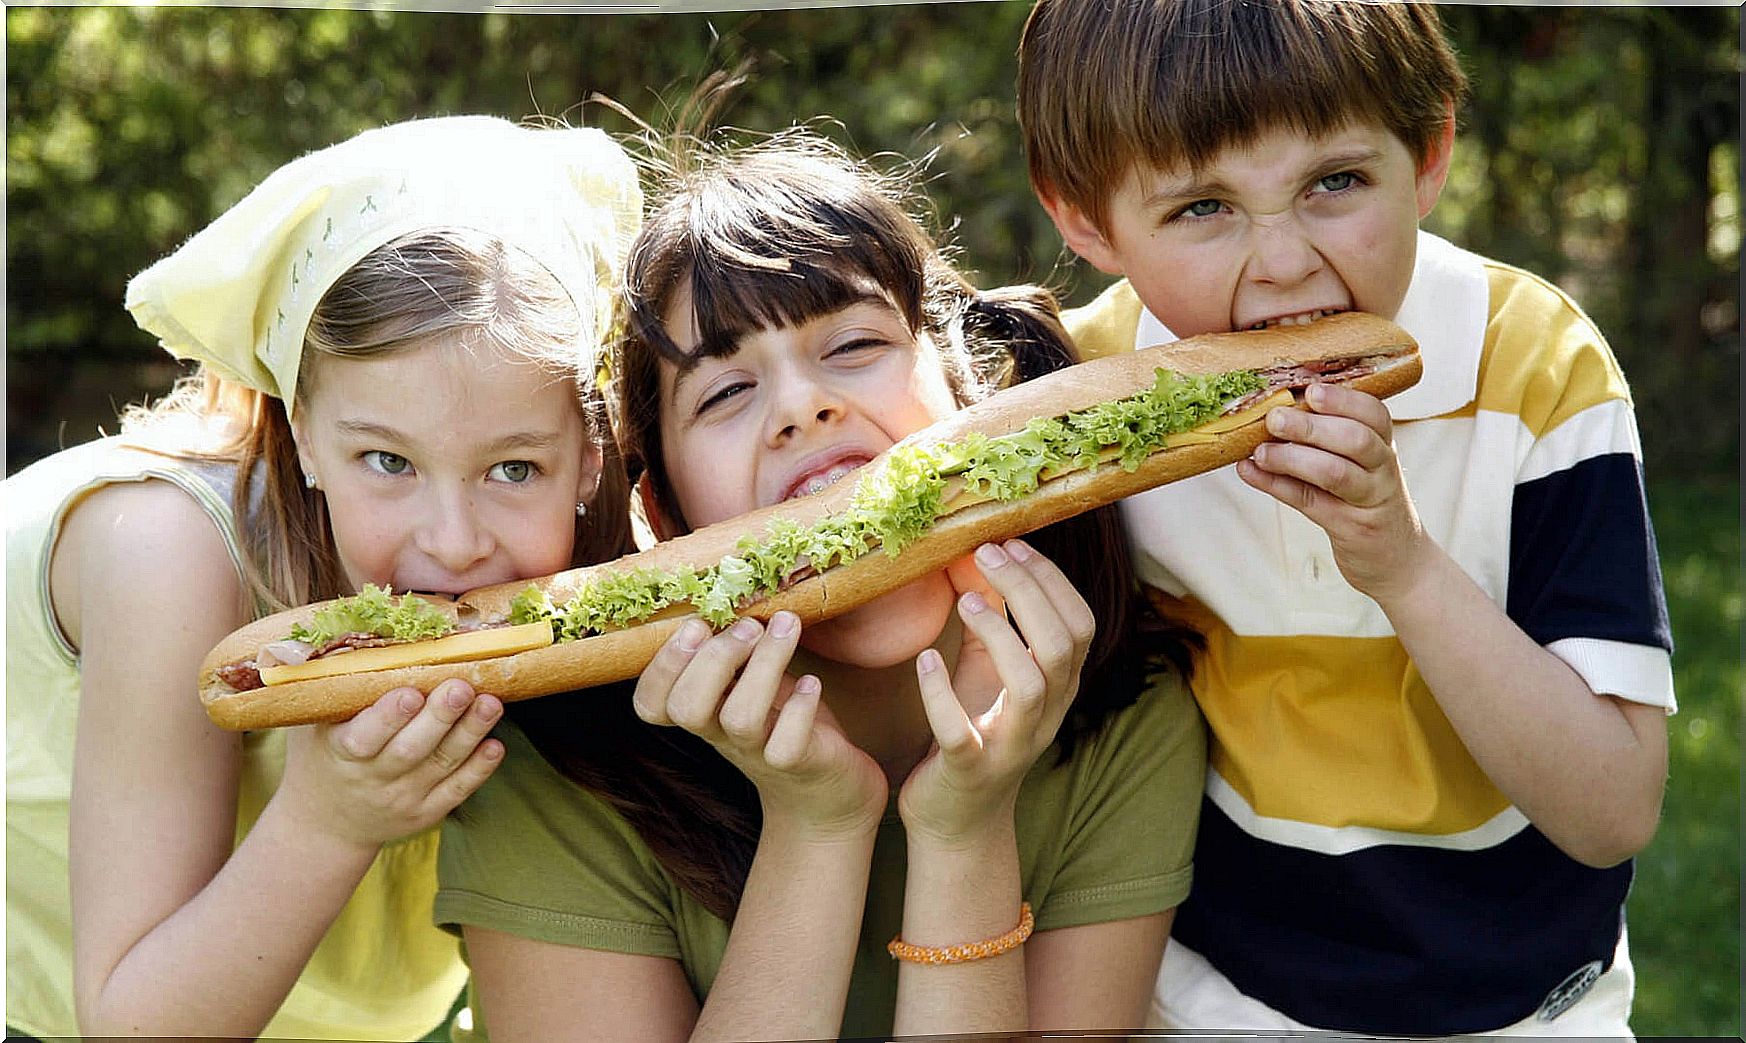 Three children share a sandwich